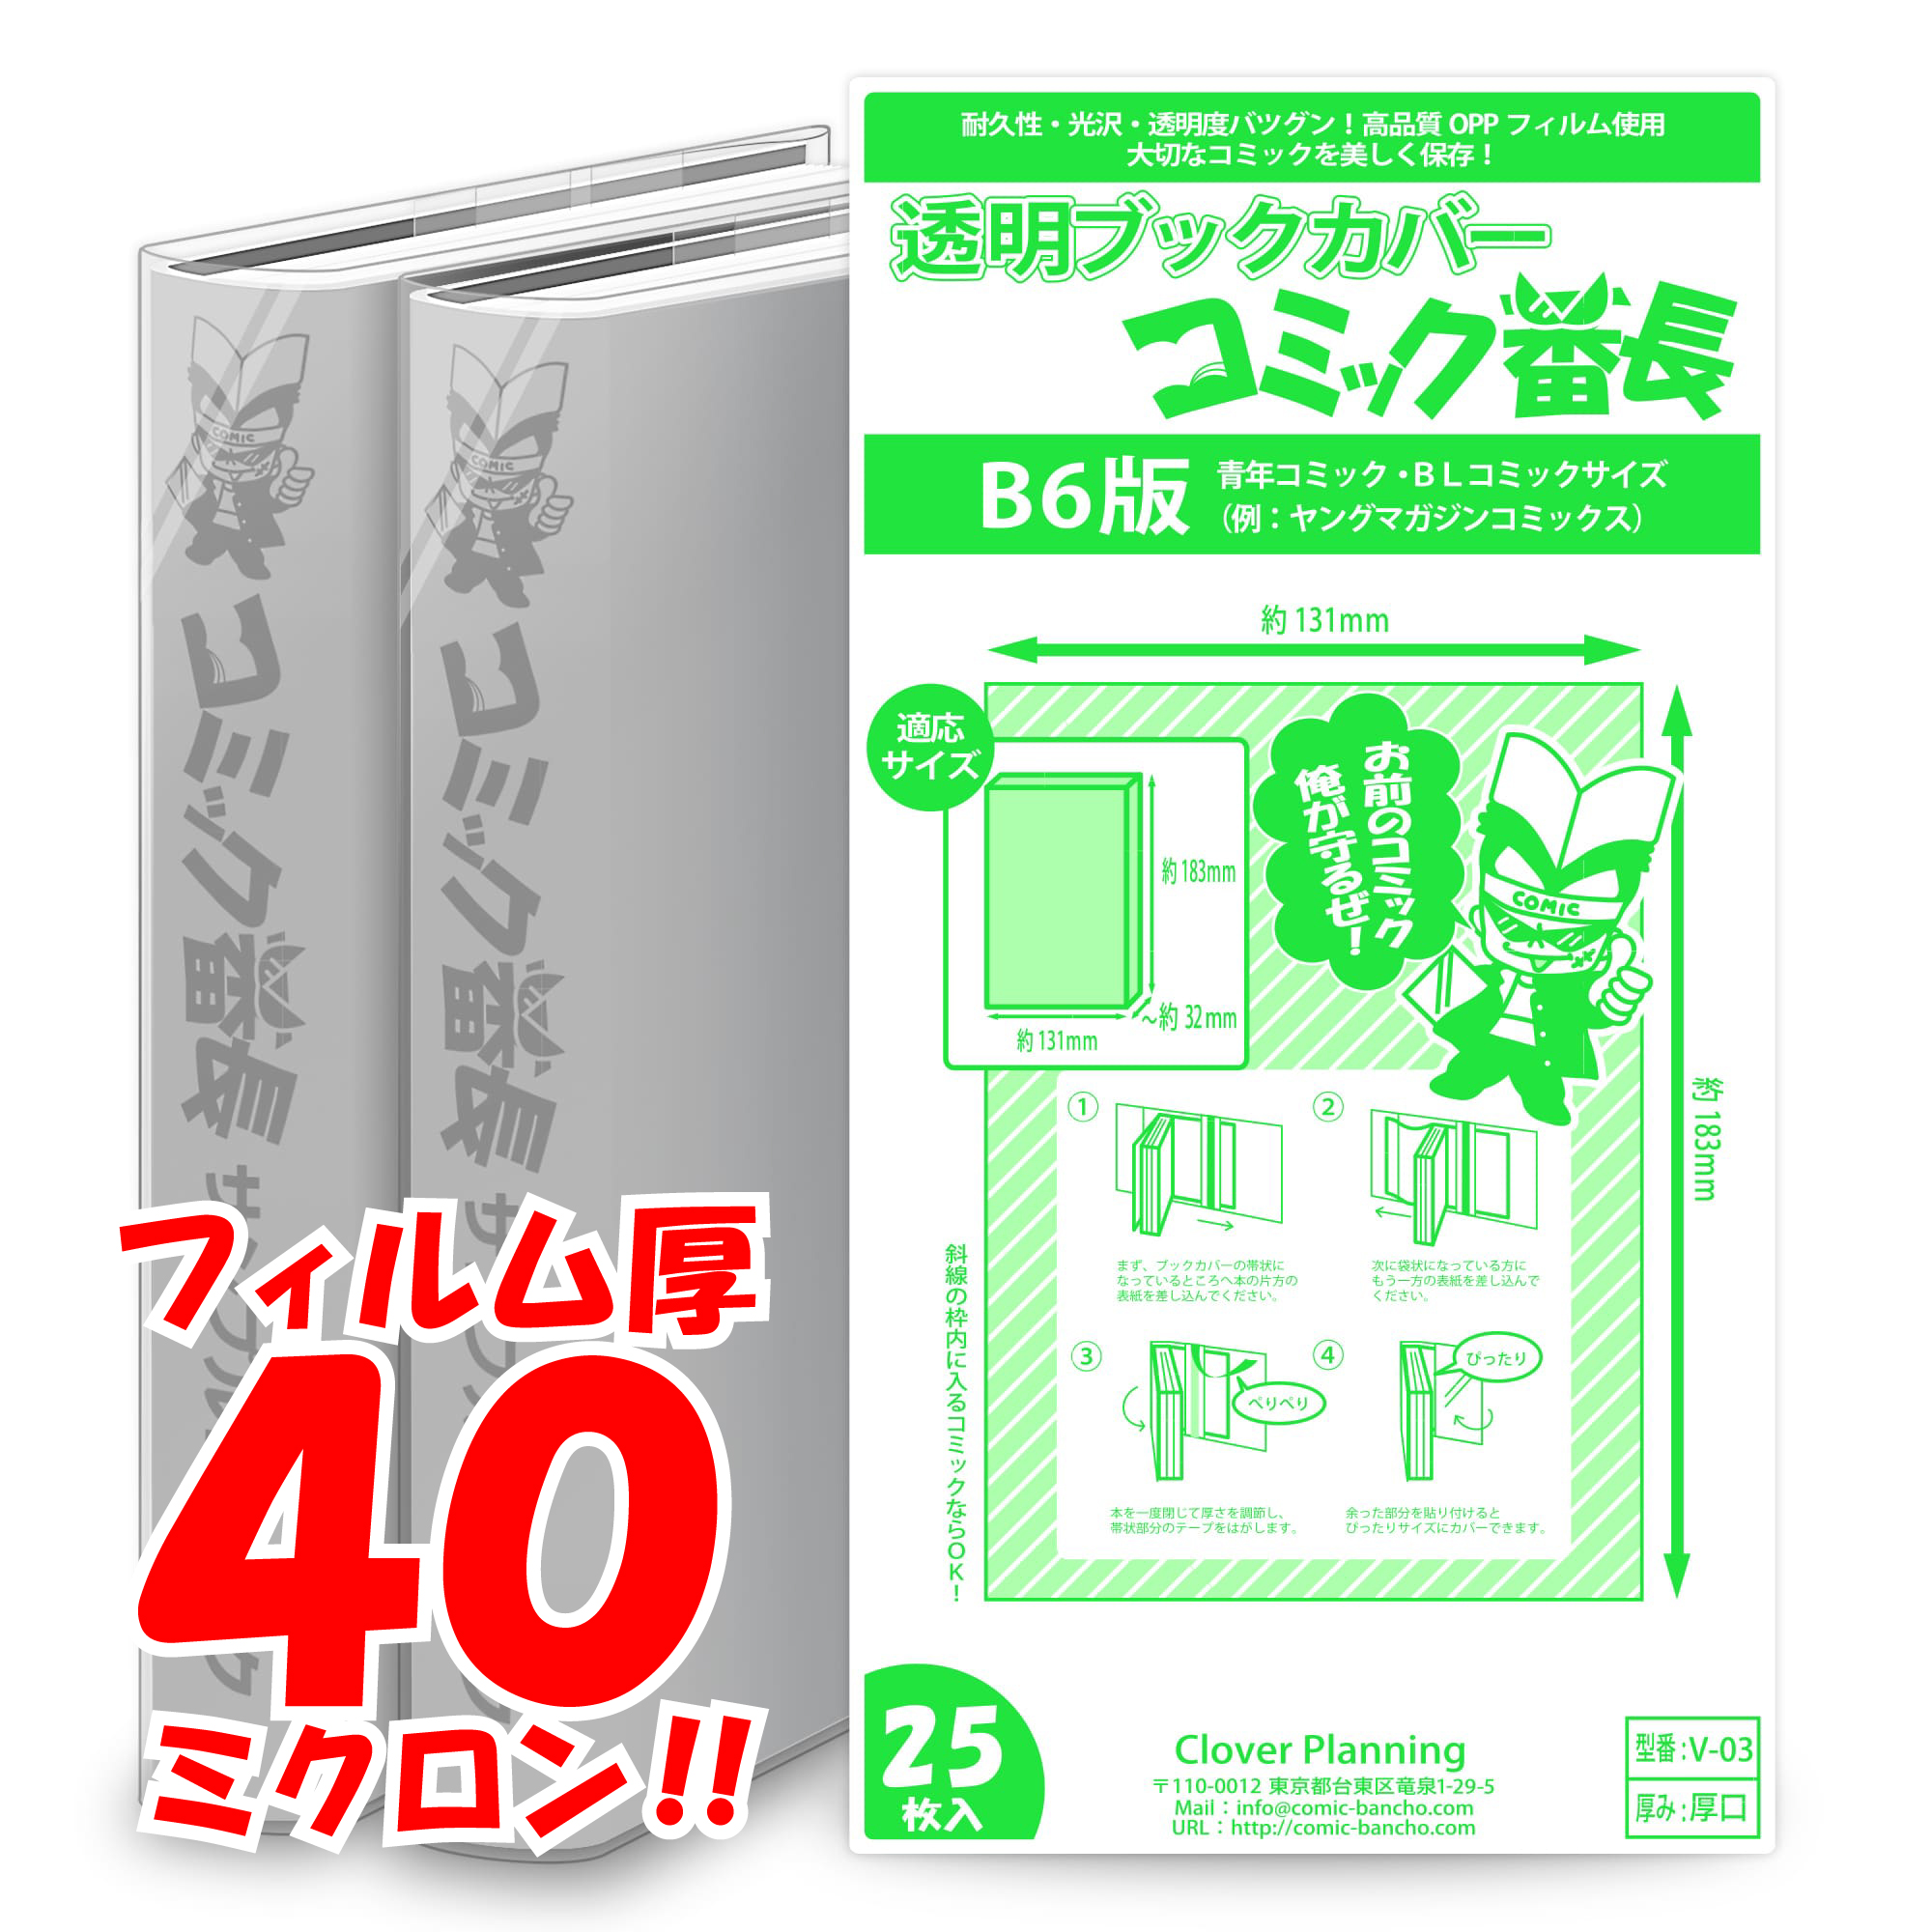 楽天市場 送料無料 透明ブックカバー ミエミエ 小b6サイズ 25枚 コミックカバー すずや恵比寿堂